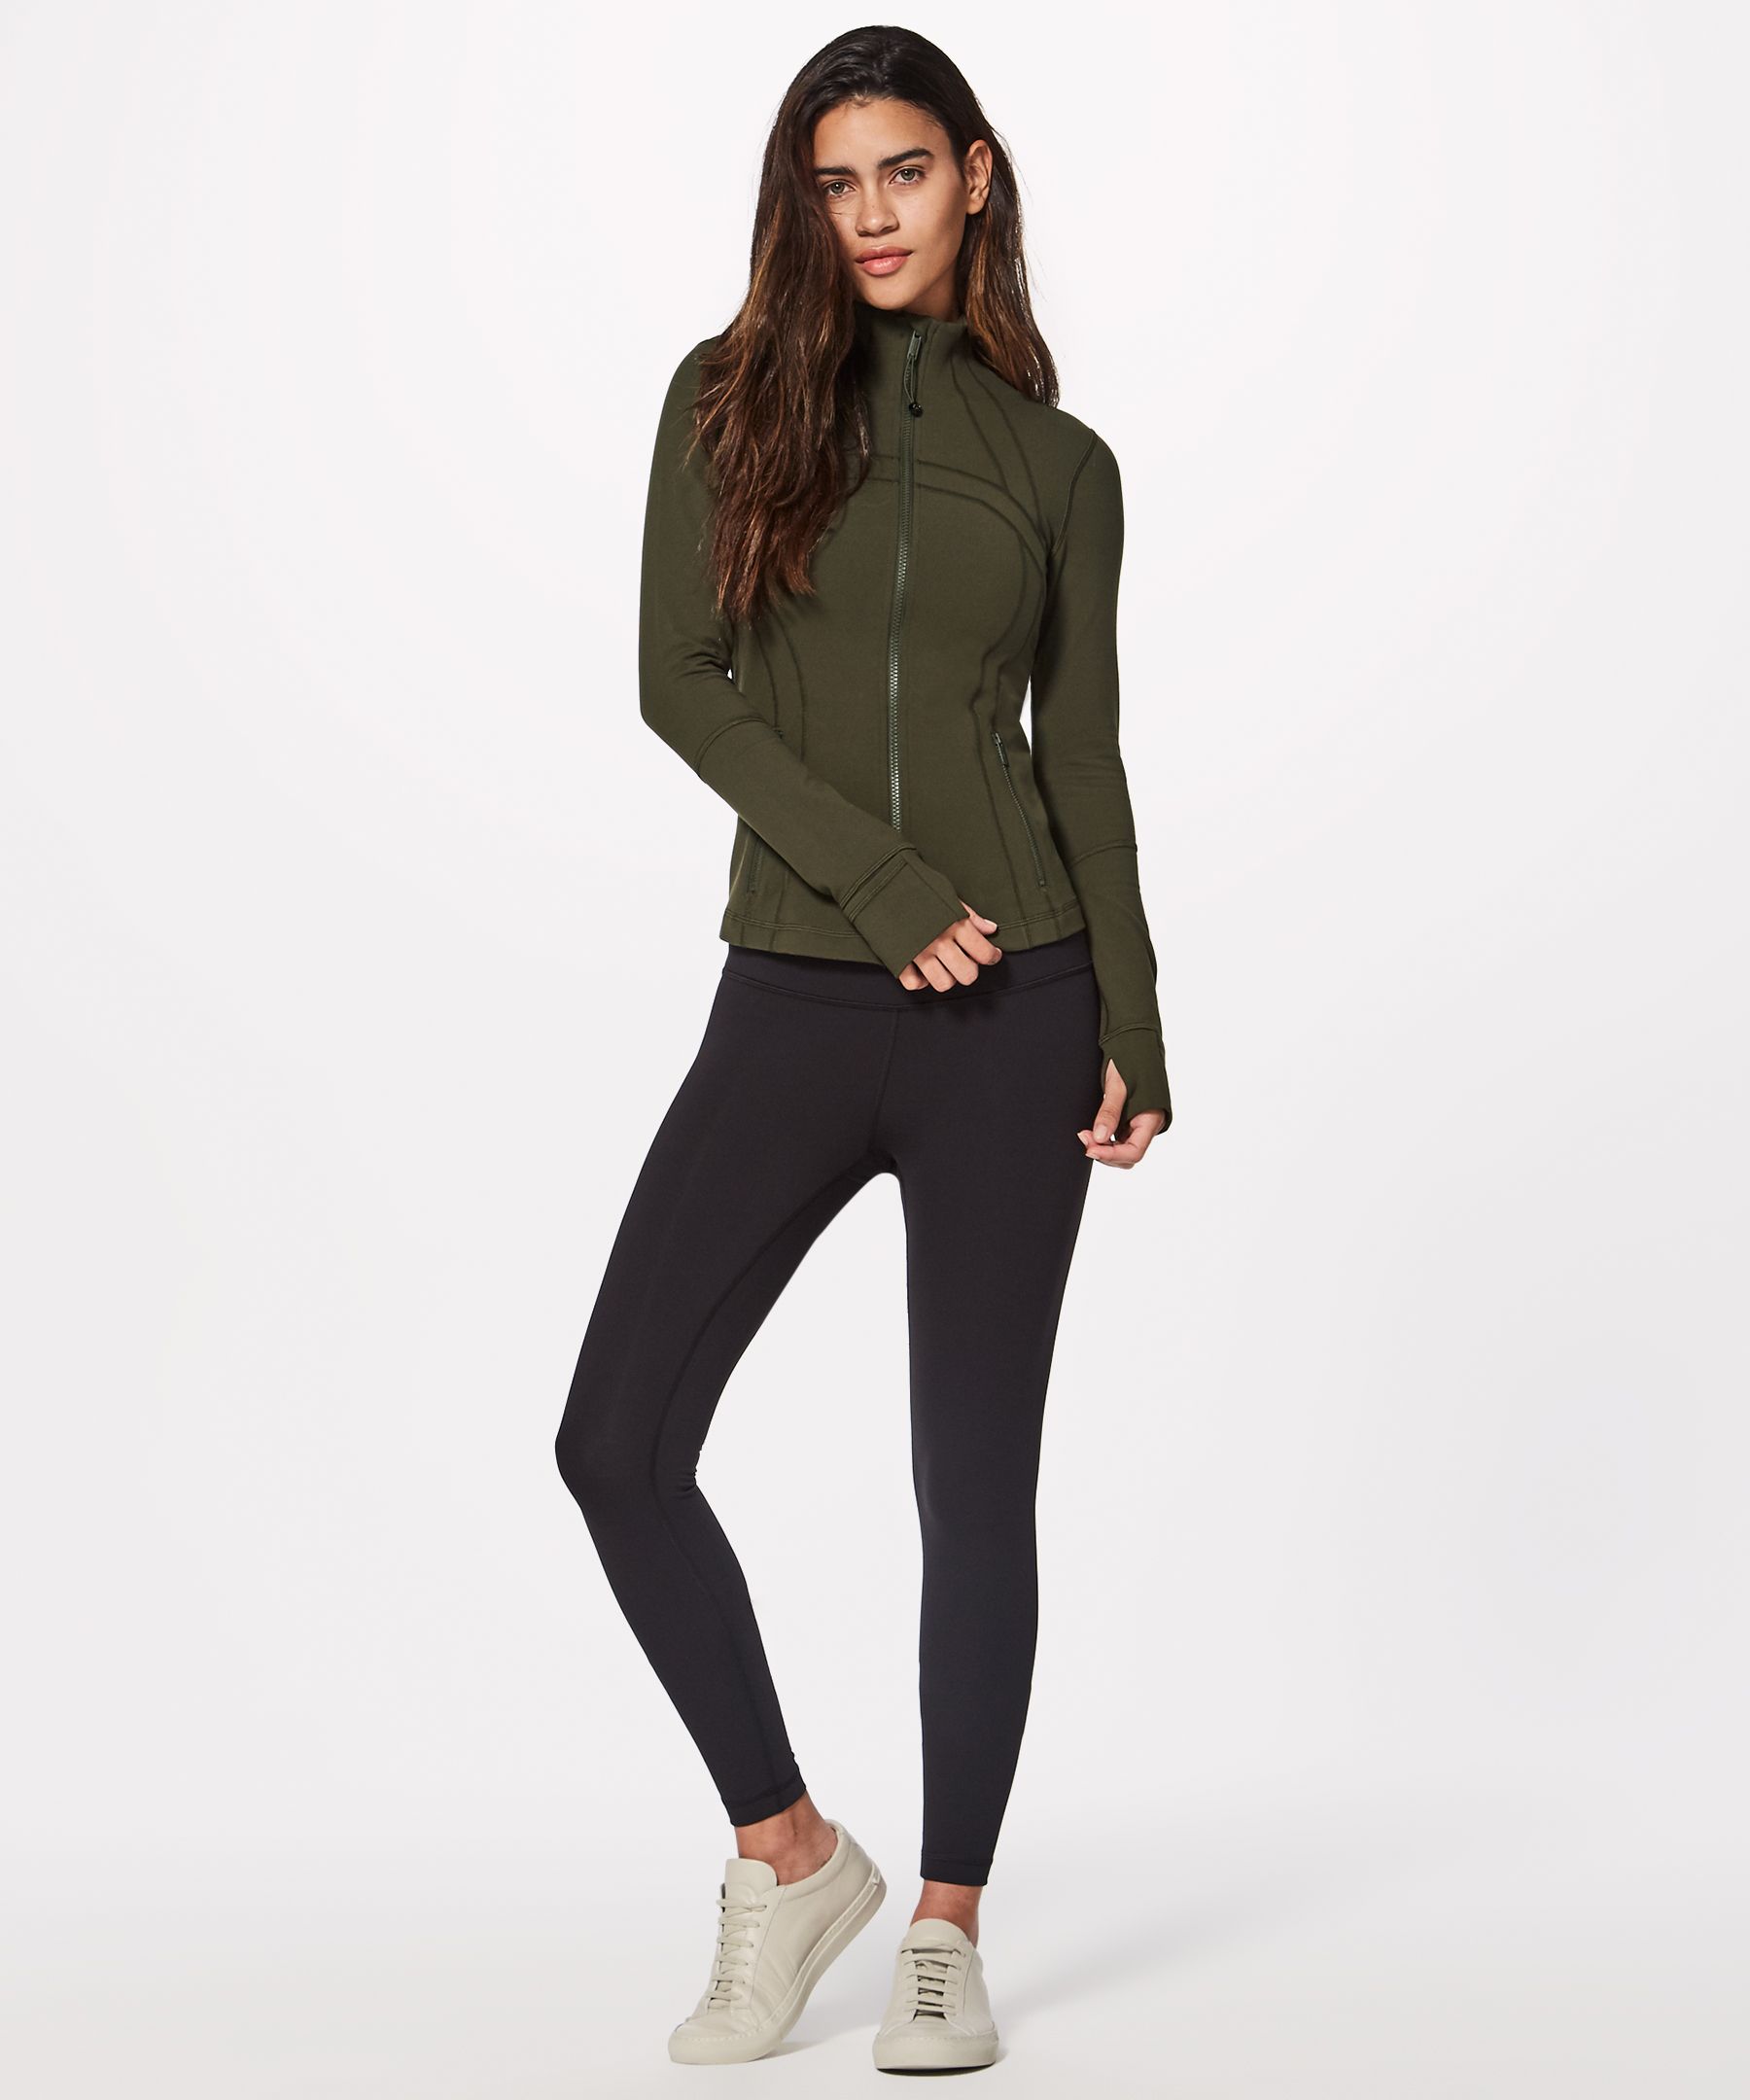 NWT Lululemon Women's Define Luon Jacket Size 8 – Palmer Kennedy